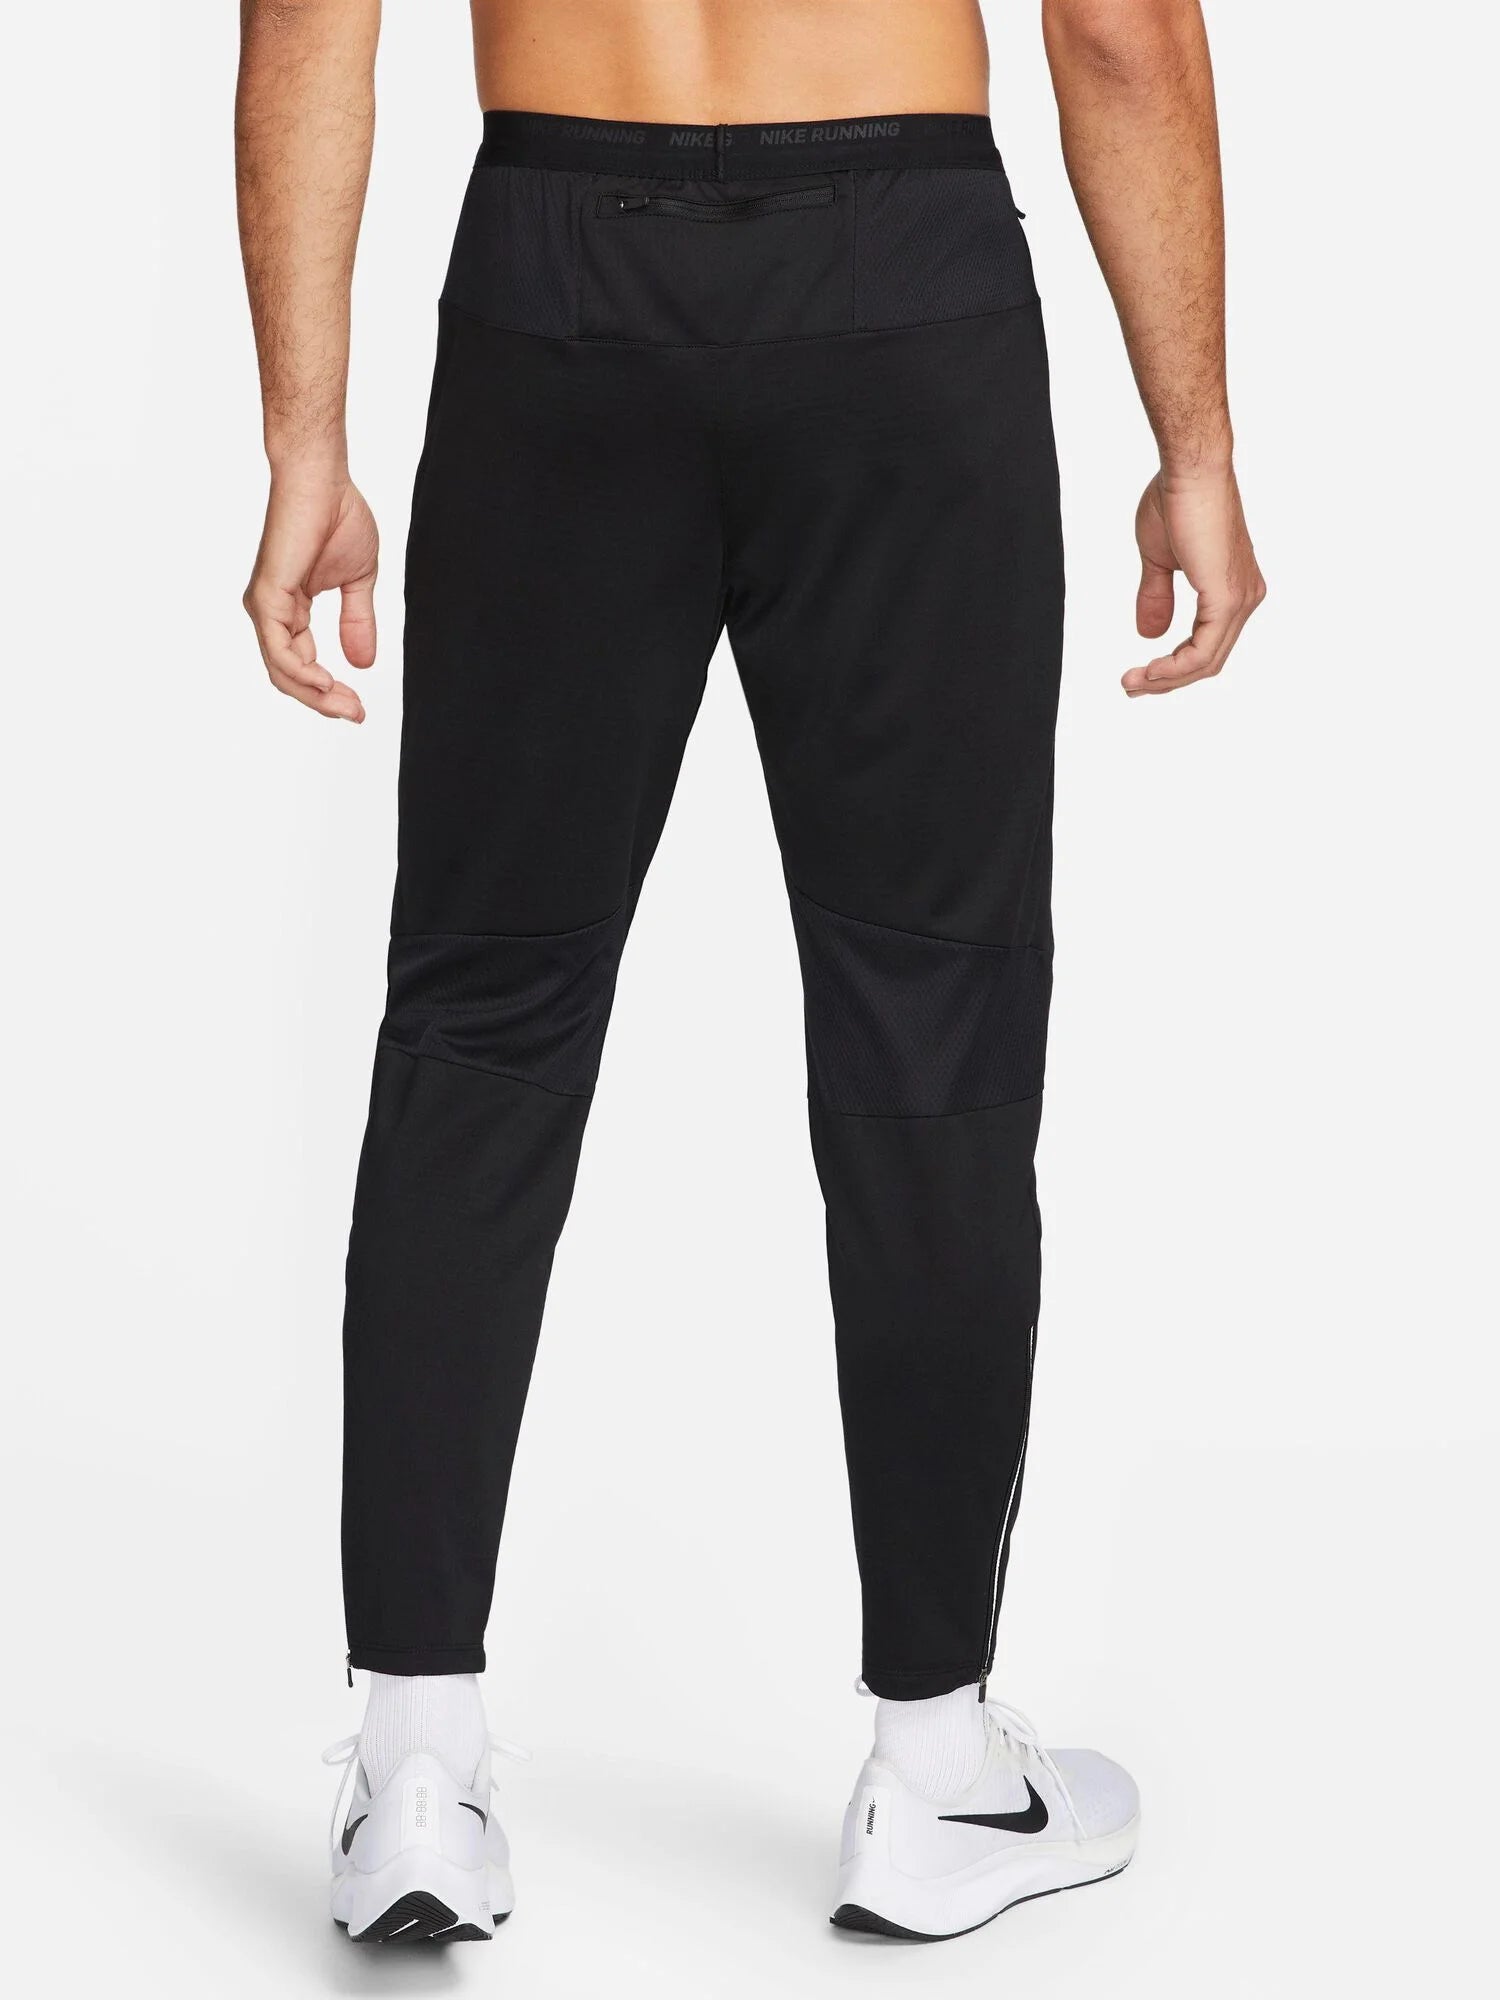 Pantalon Nike Phenom - Noir